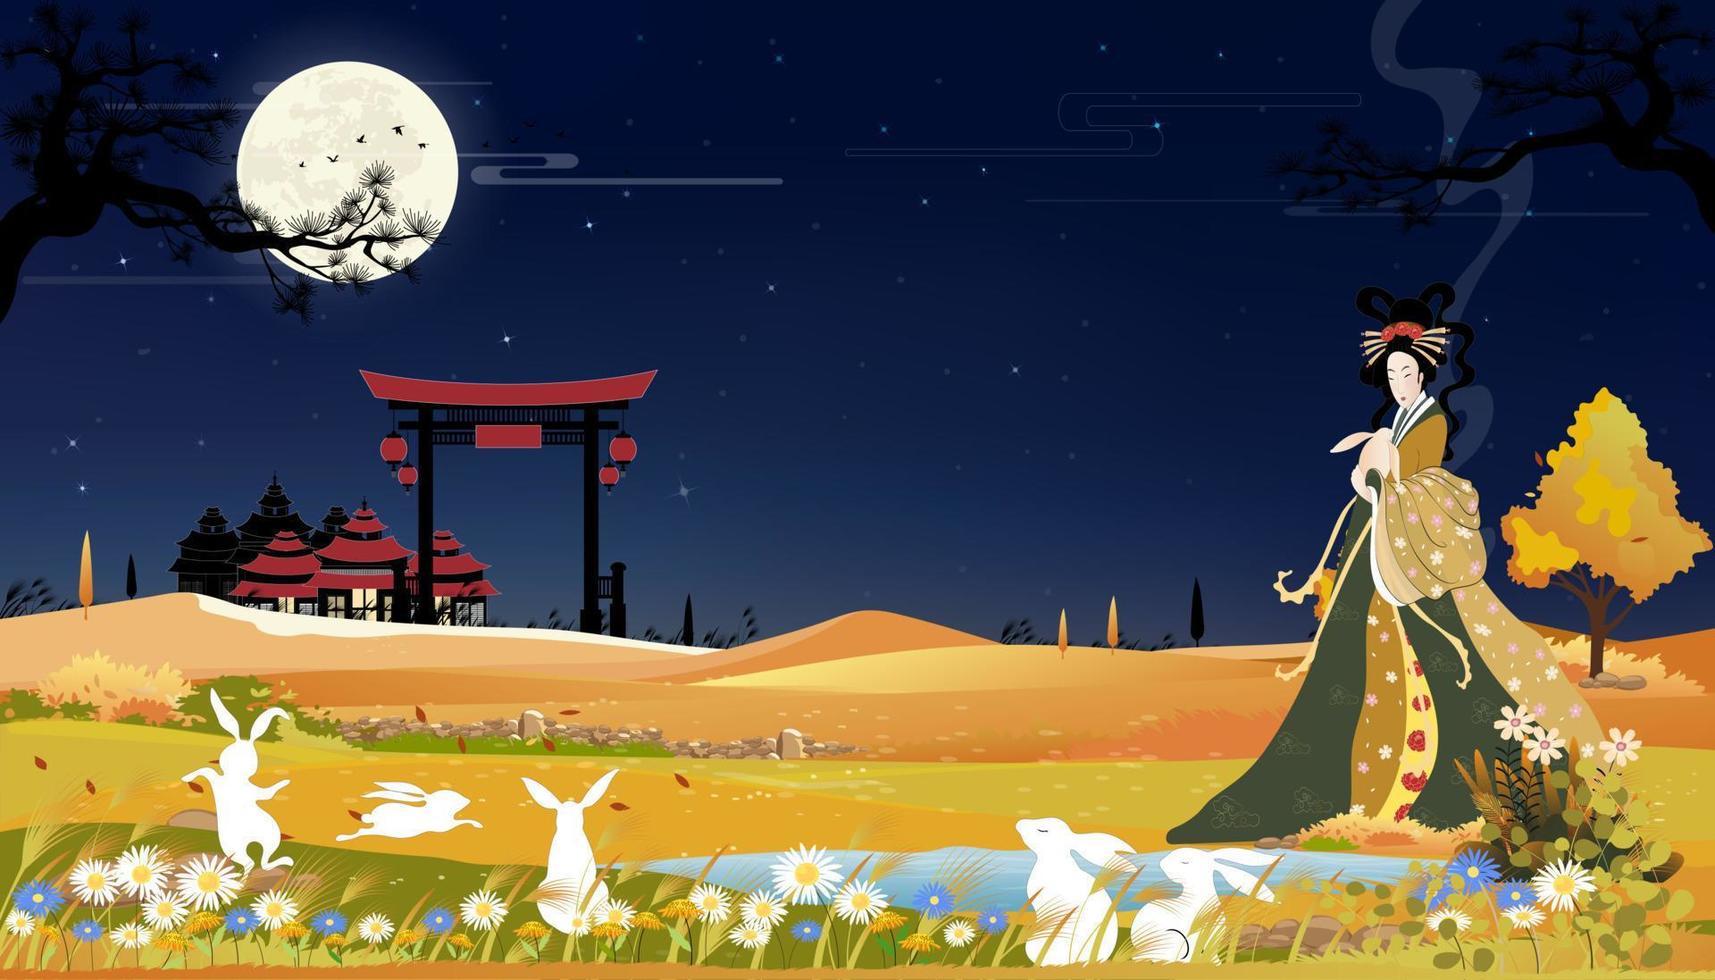 medio herfst festival banner met mooie verandering met jade konijnen met volle maan 's nachts, vector illustratie cartoon medio herfst festival met chinese godin van de maan en witte konijnen